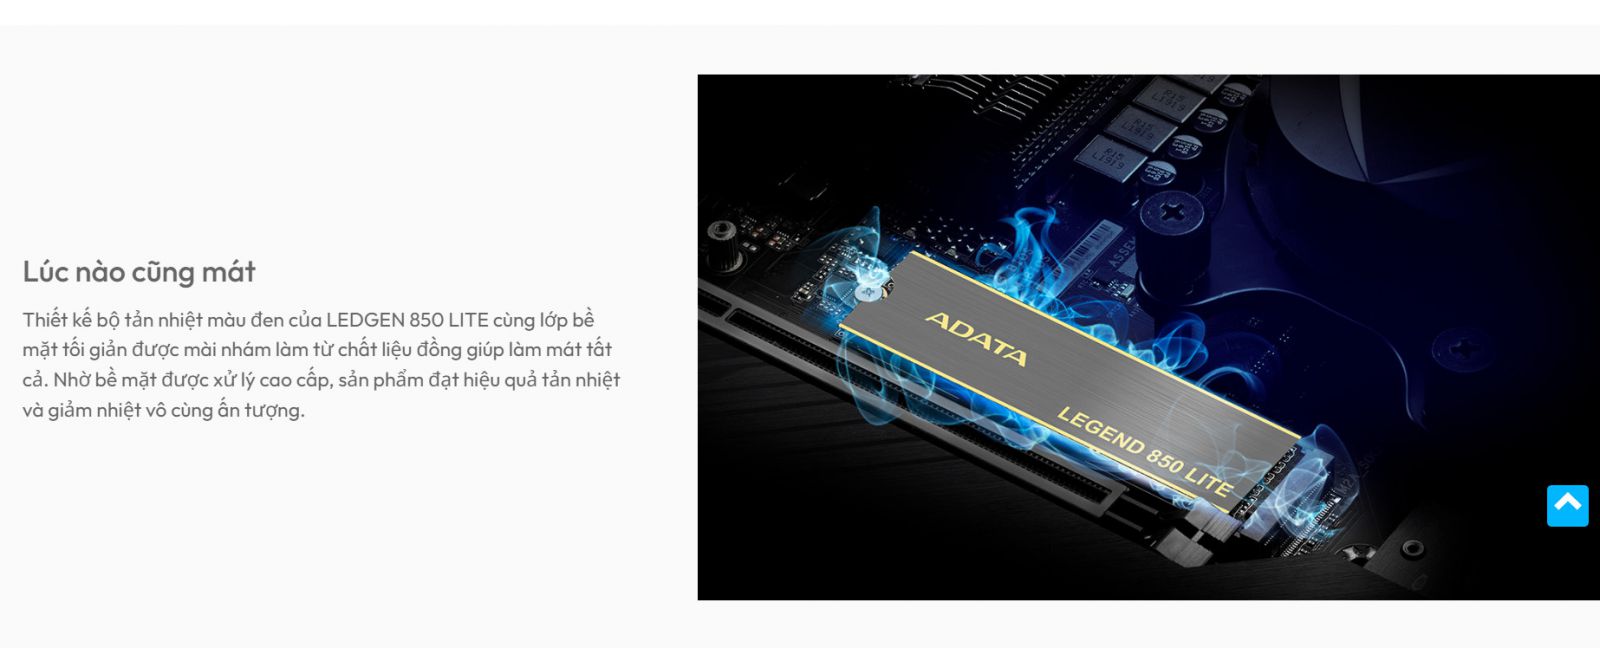 Ổ CỨNG SSD ADATA LEGEND 850 LITE 1TB PCIE GEN4 X4 - VI TÍNH NGUYỄN THẮNG